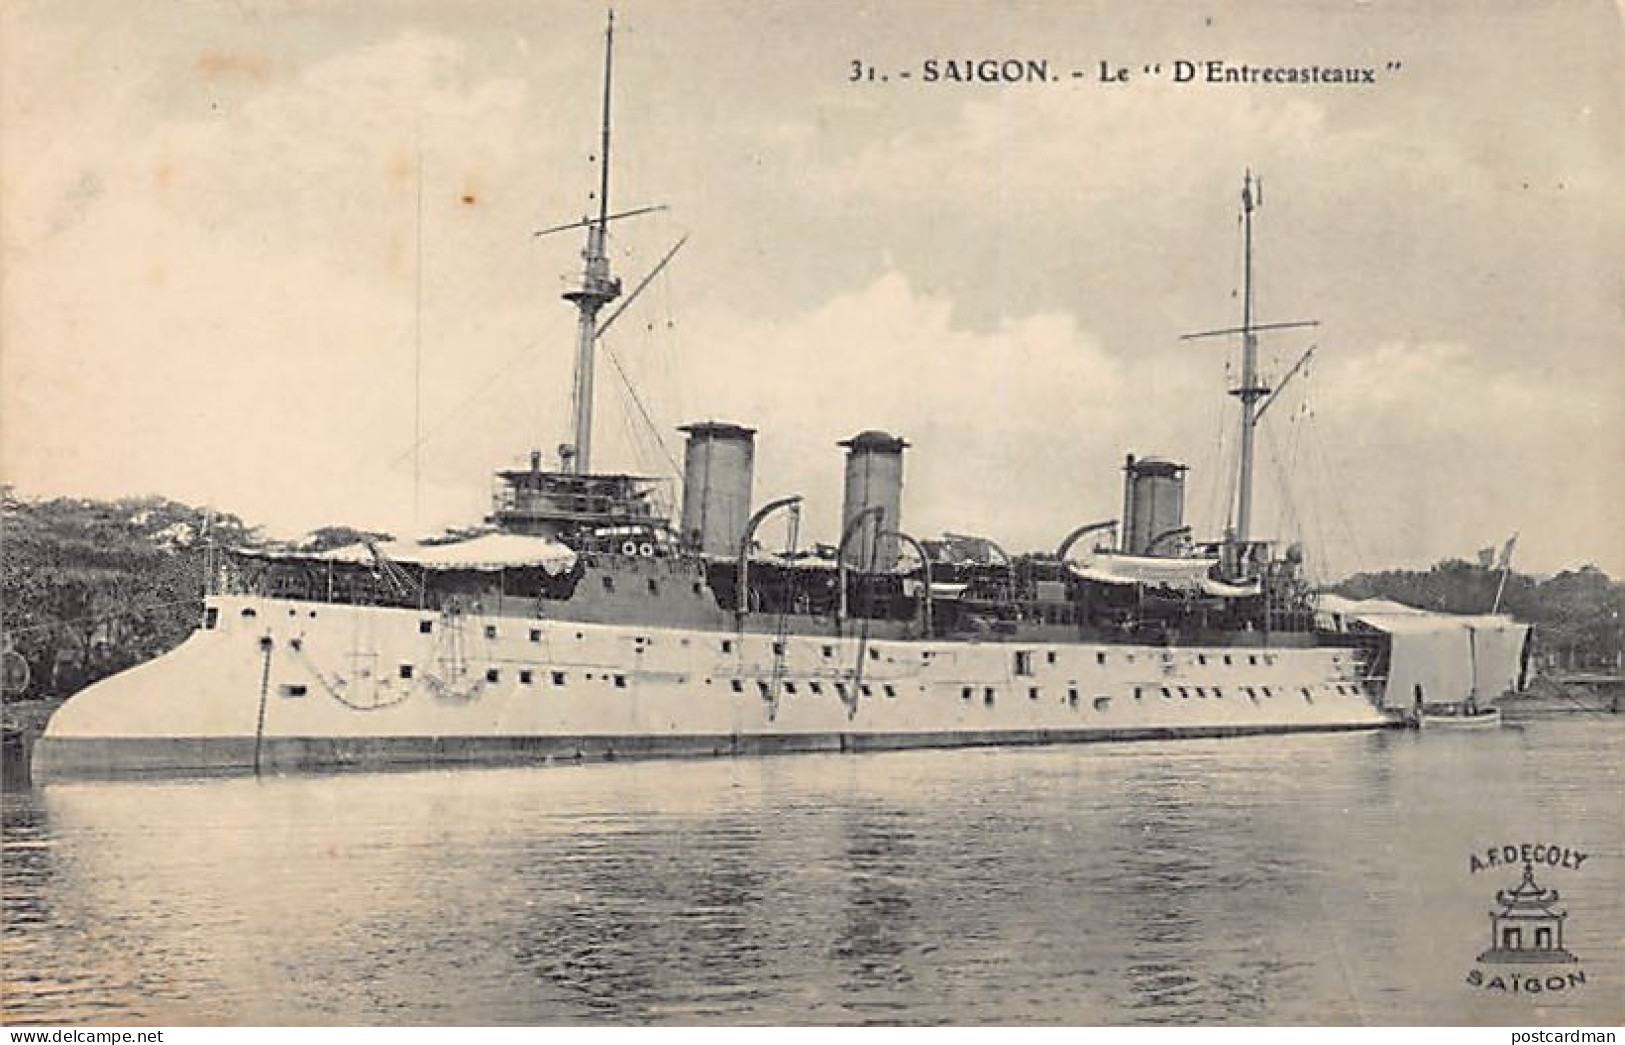 Viet-Nam - SAIGON - Croiseur D'Entrecasteaux - Ed. A. F. Decoly 31 - Viêt-Nam